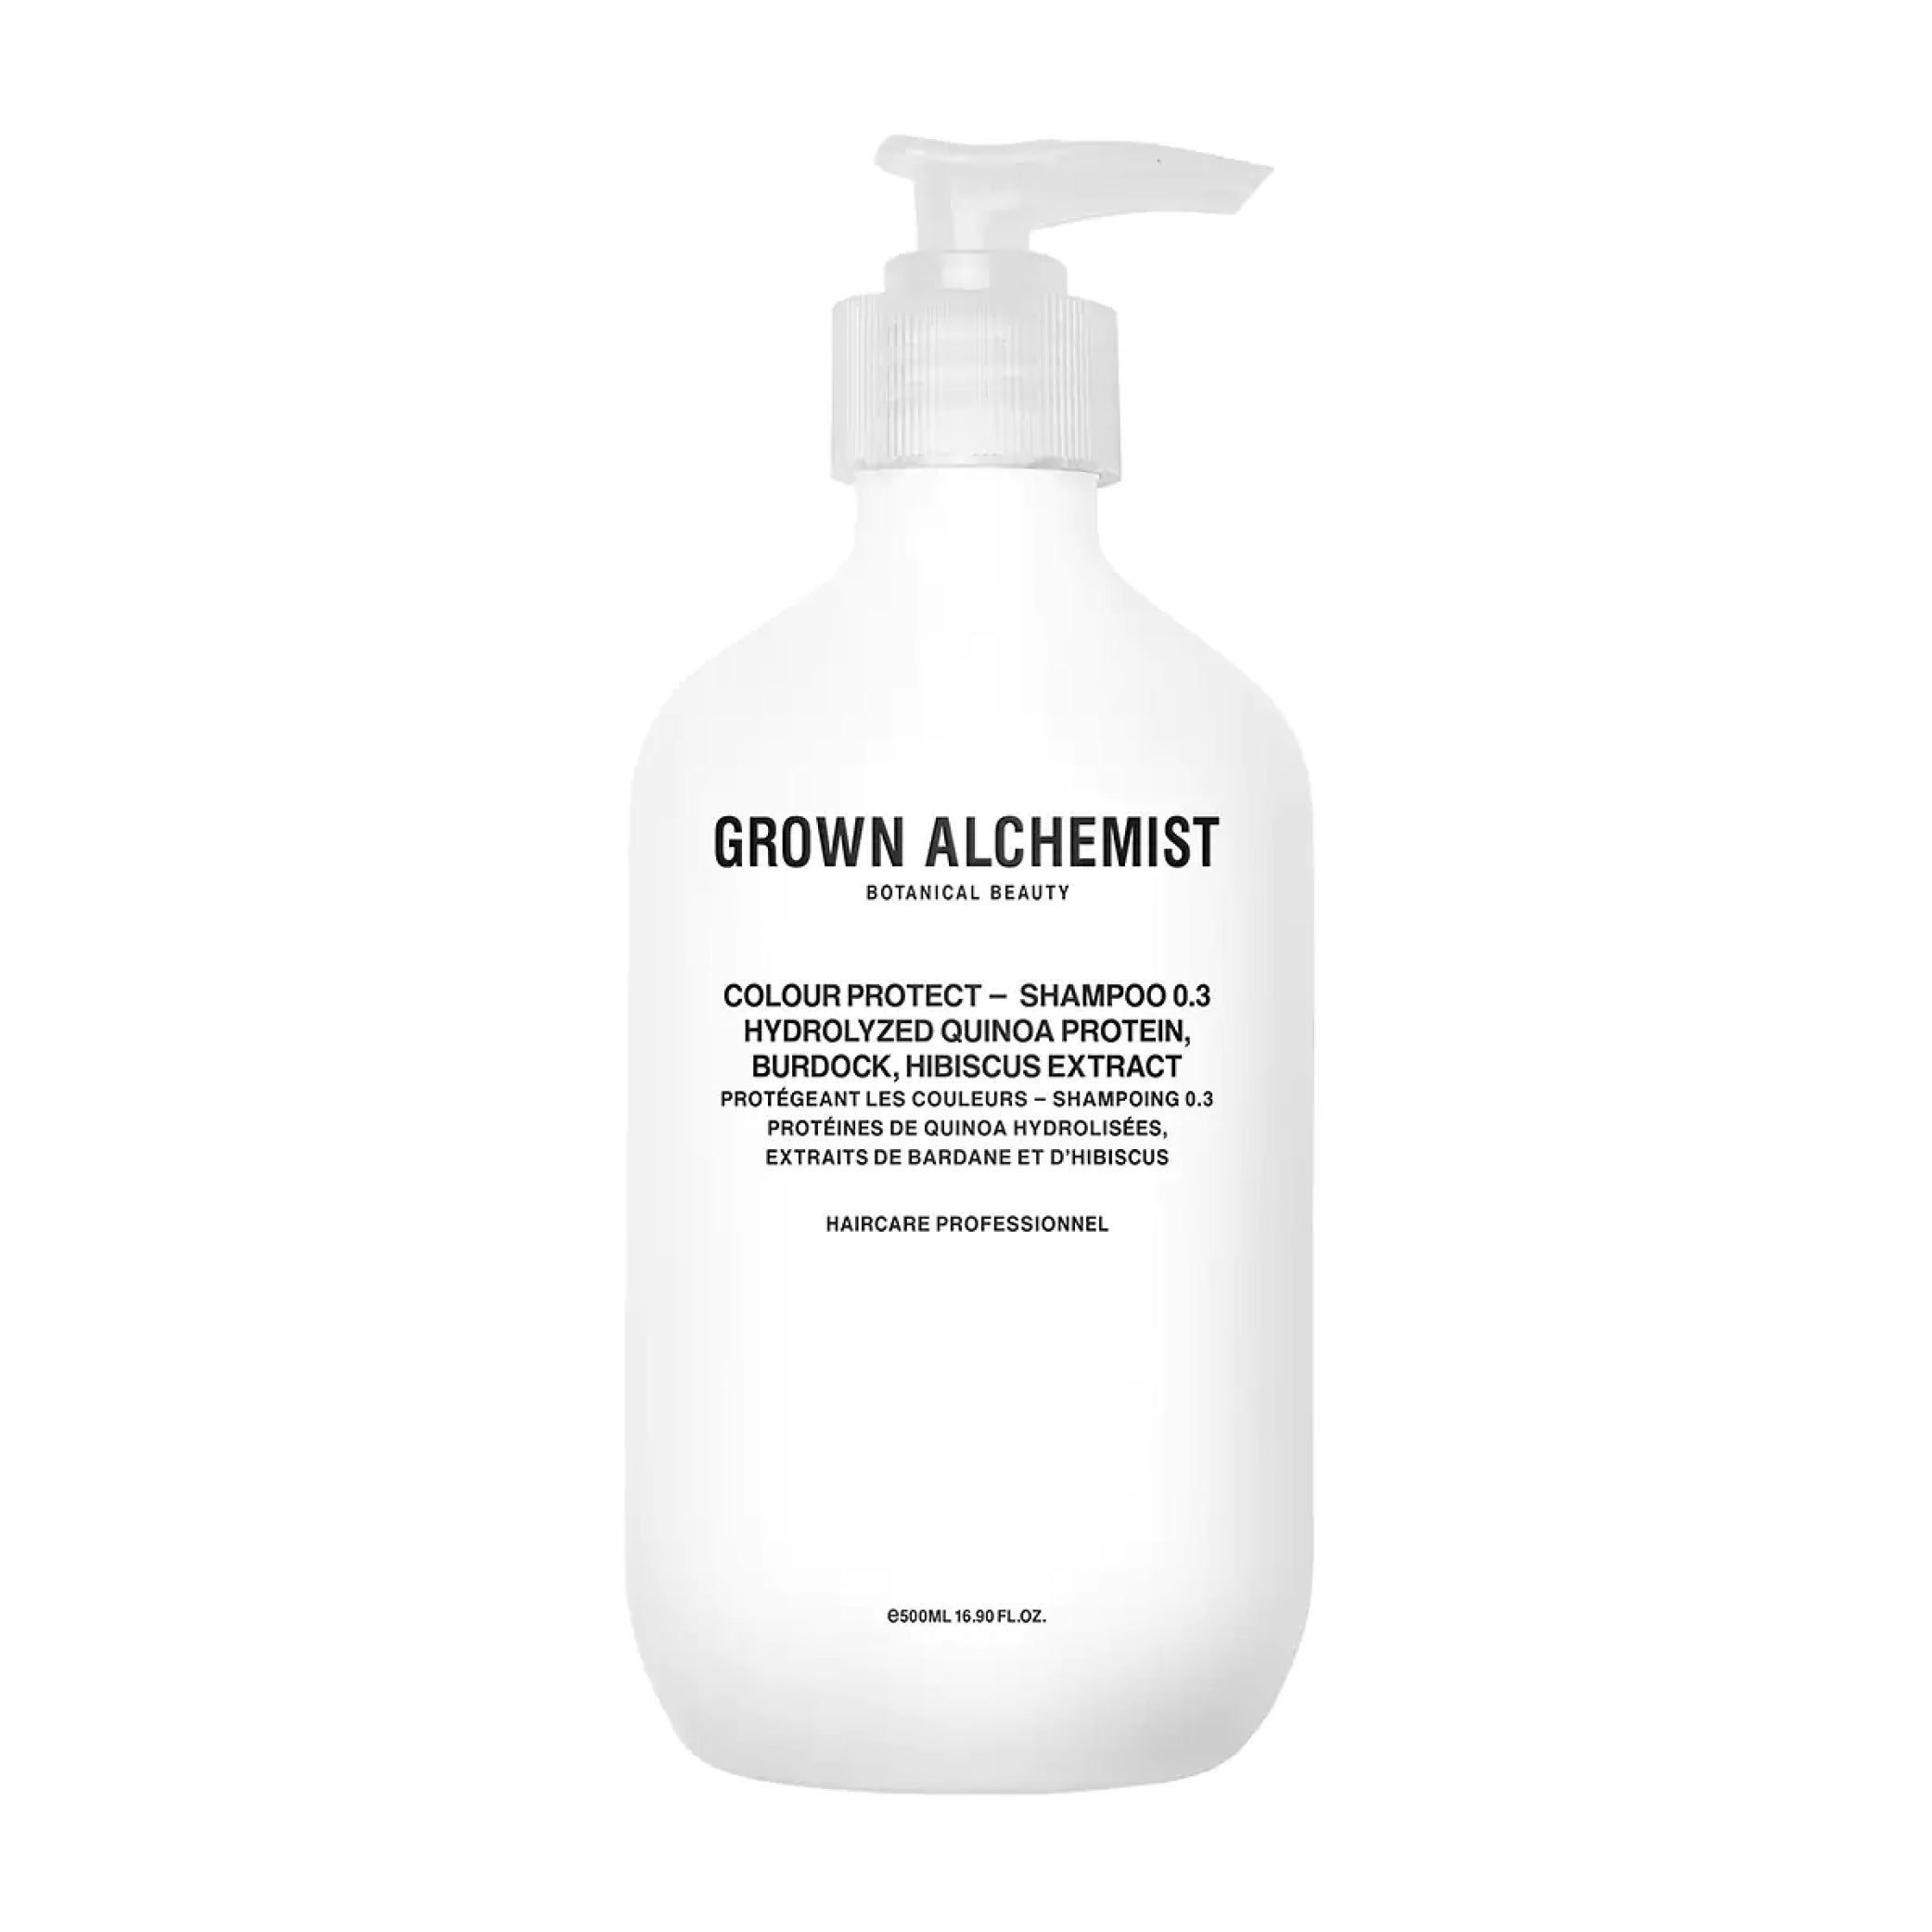 Colour Protect - Shampoo 0.3